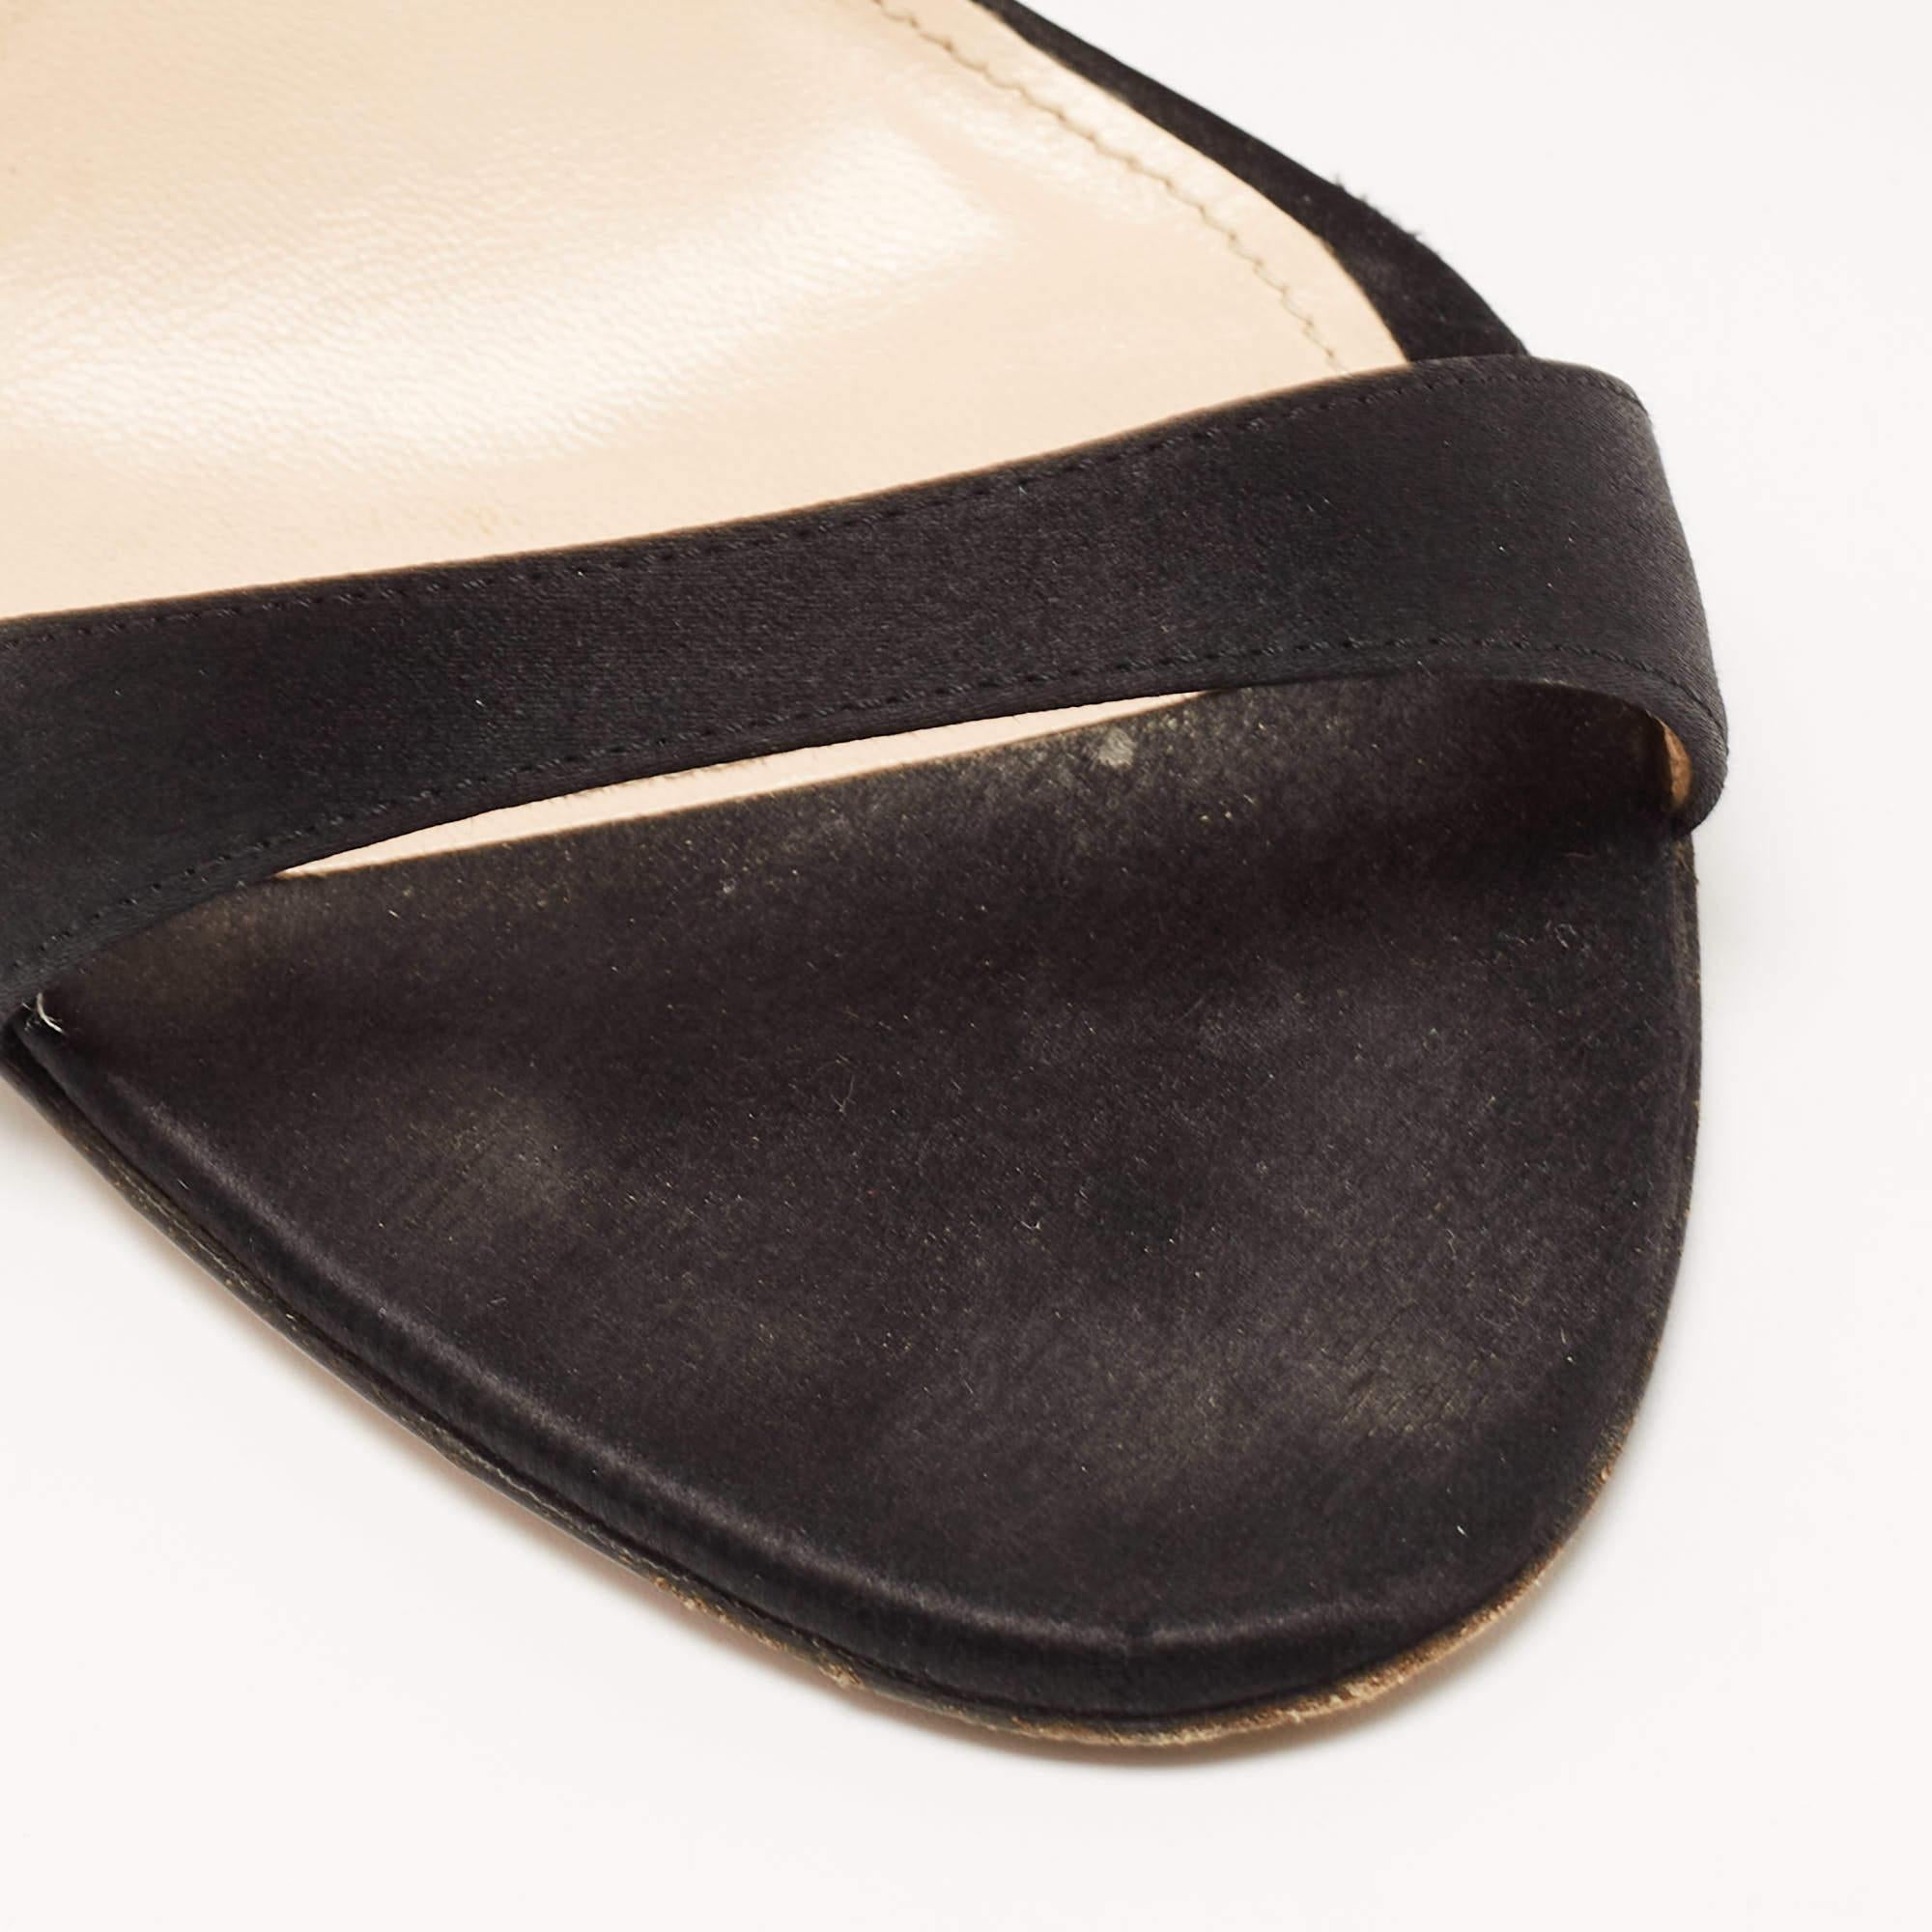 Prada Black Satin Ankle Strap Sandals Size 37.5 1